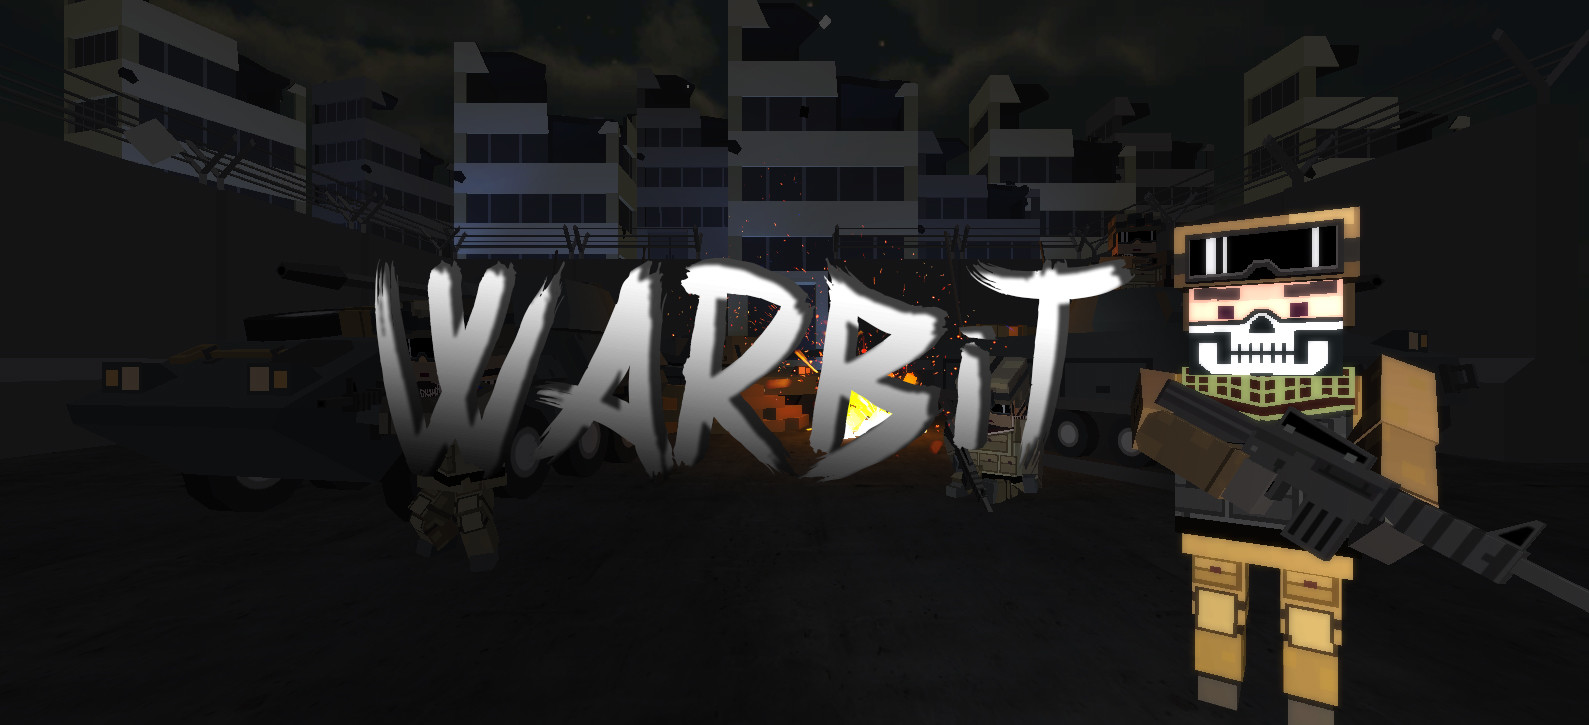 Warbit